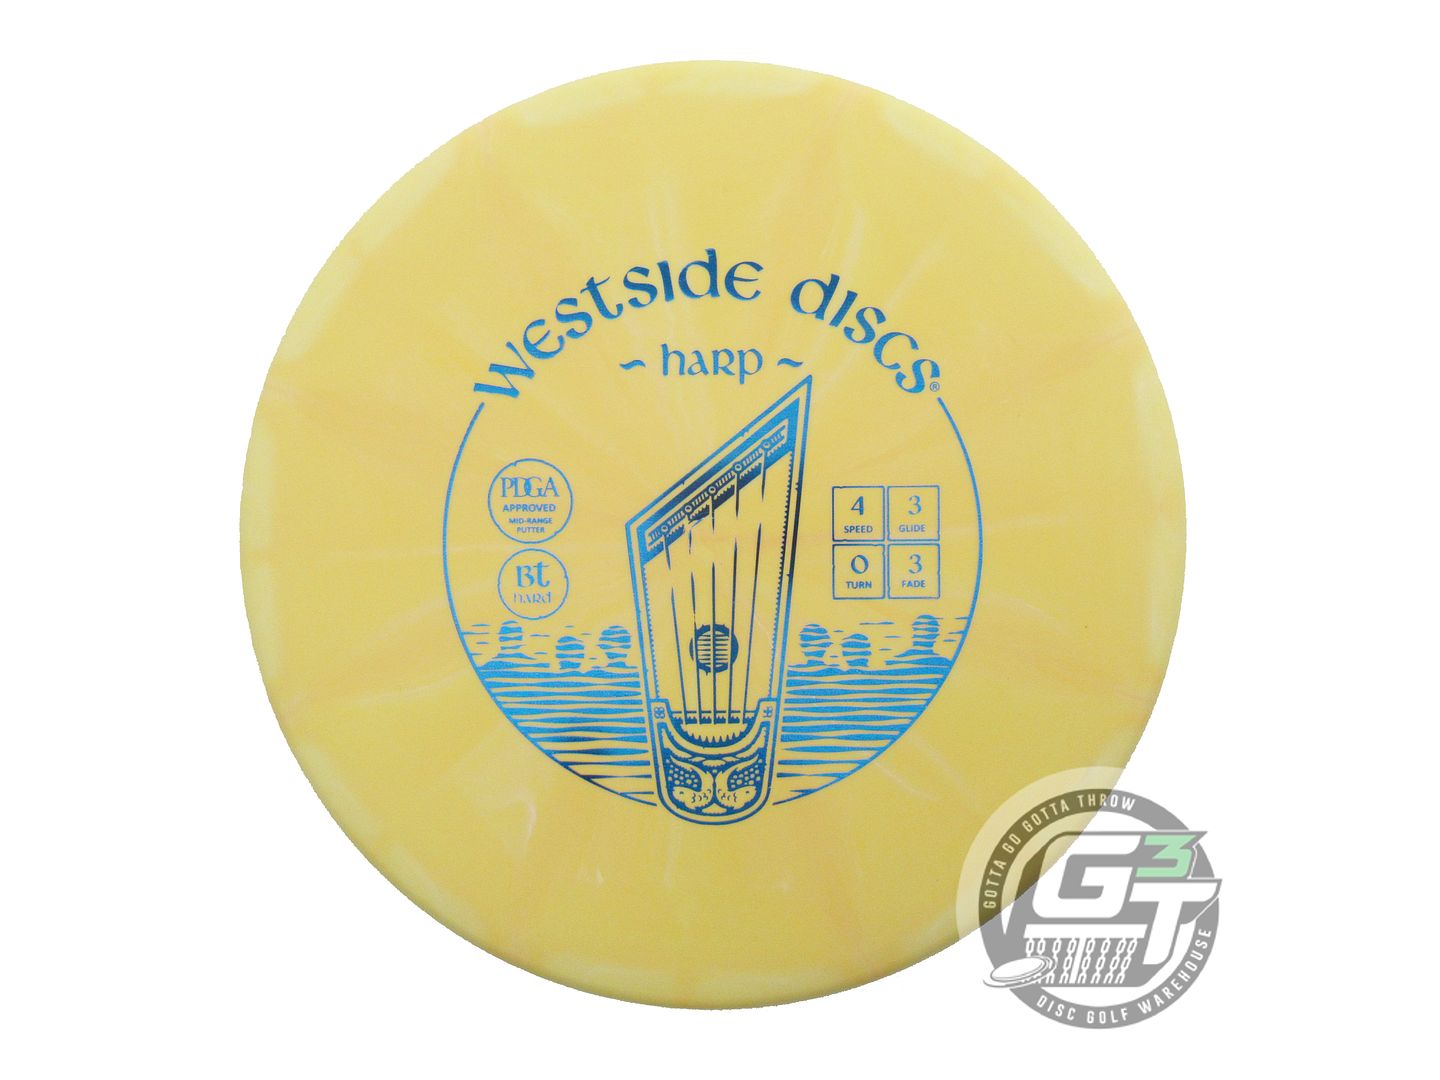 Westside BT Hard Burst Harp Putter Golf Disc (Individually Listed)